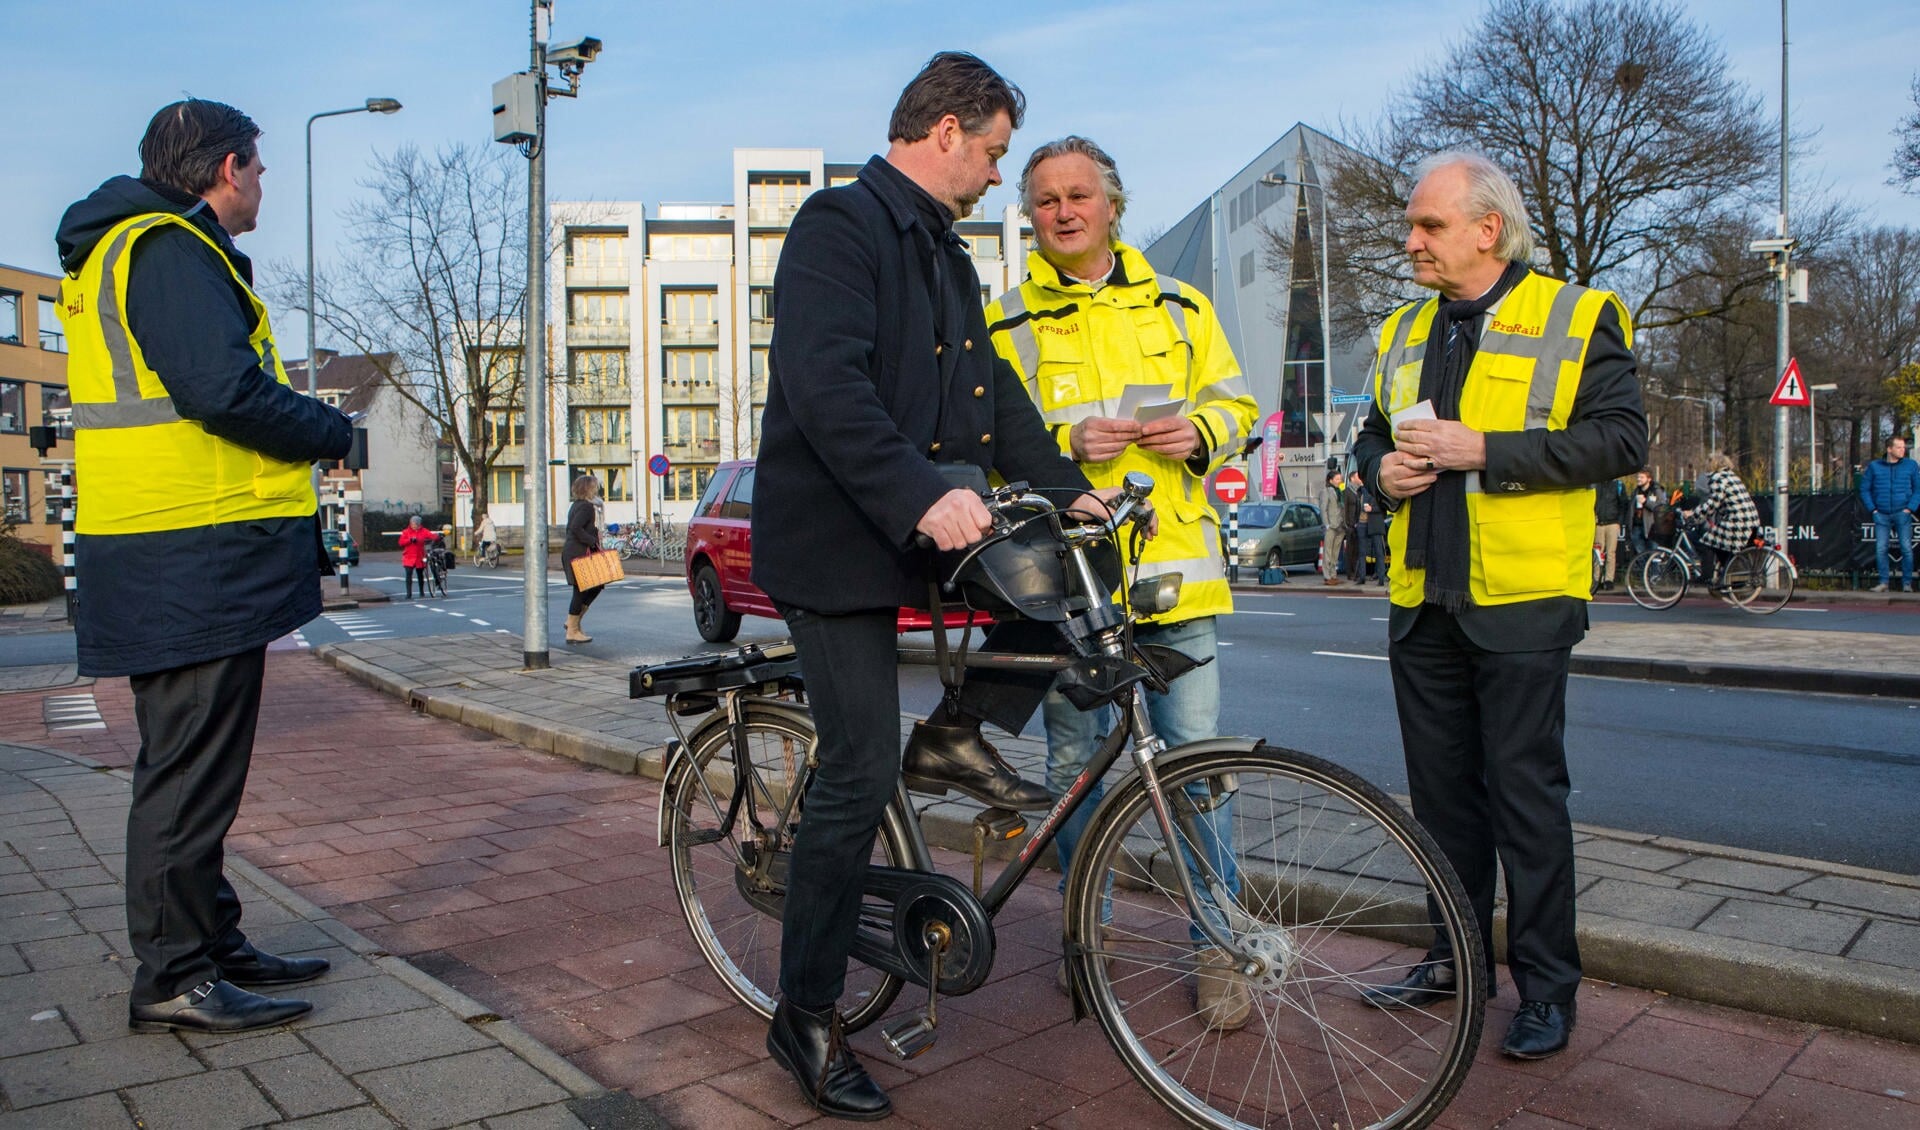 Burgemeester Broertjes van Hilversum en Pier Eringa van ProRail deelden flyers uit. 